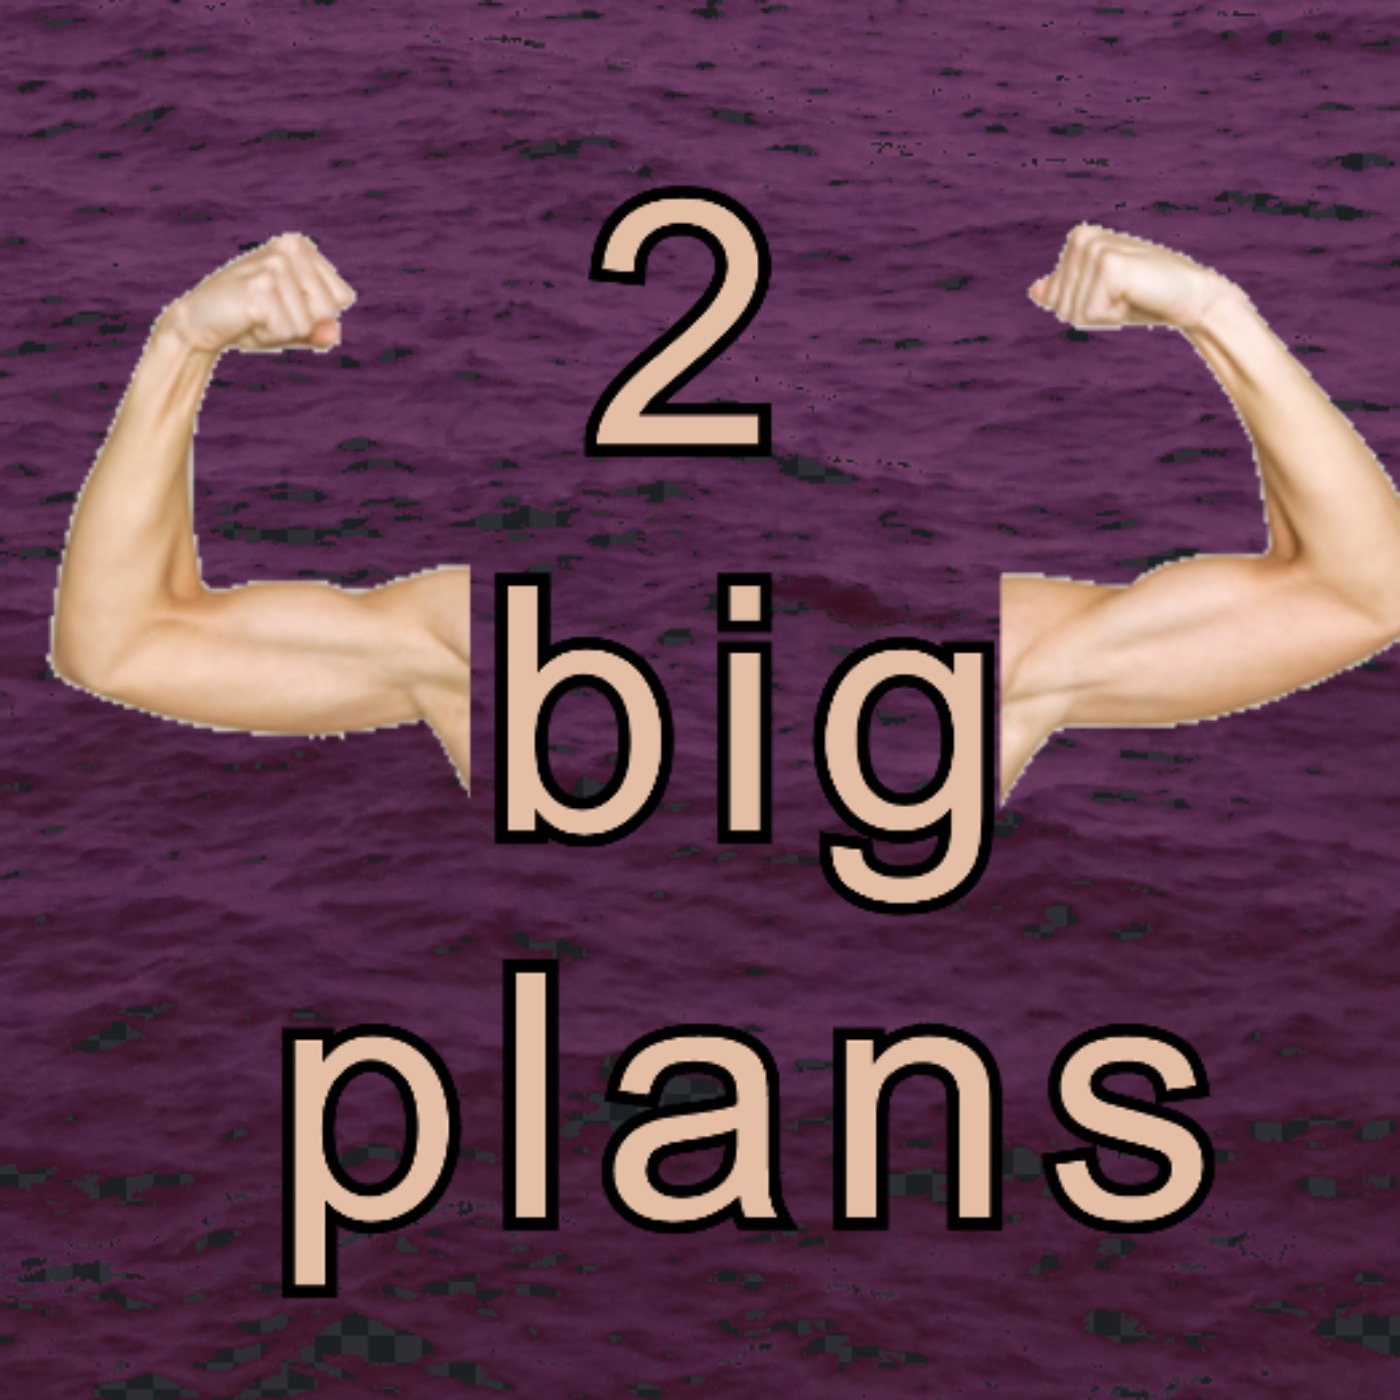 2 big plans